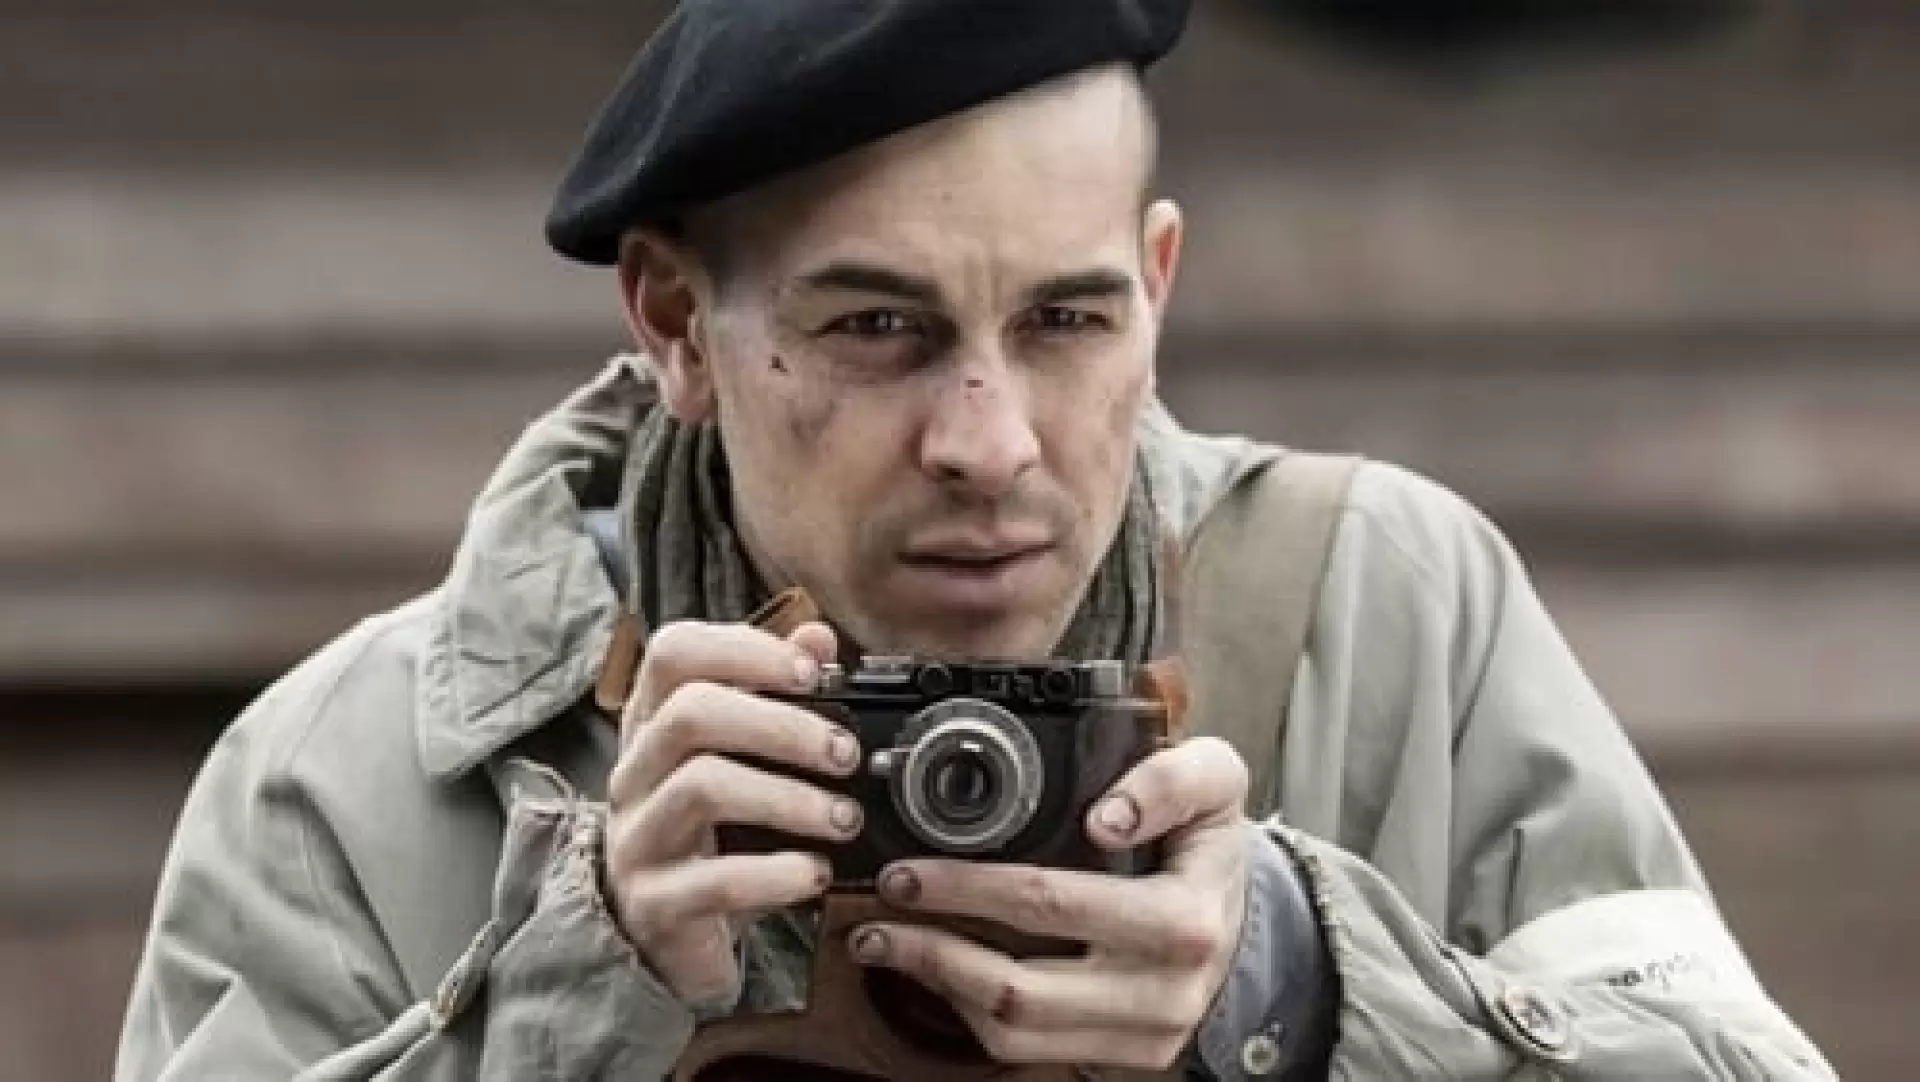 دانلود فیلم The Photographer of Mauthausen 2018 با تماشای آنلاین